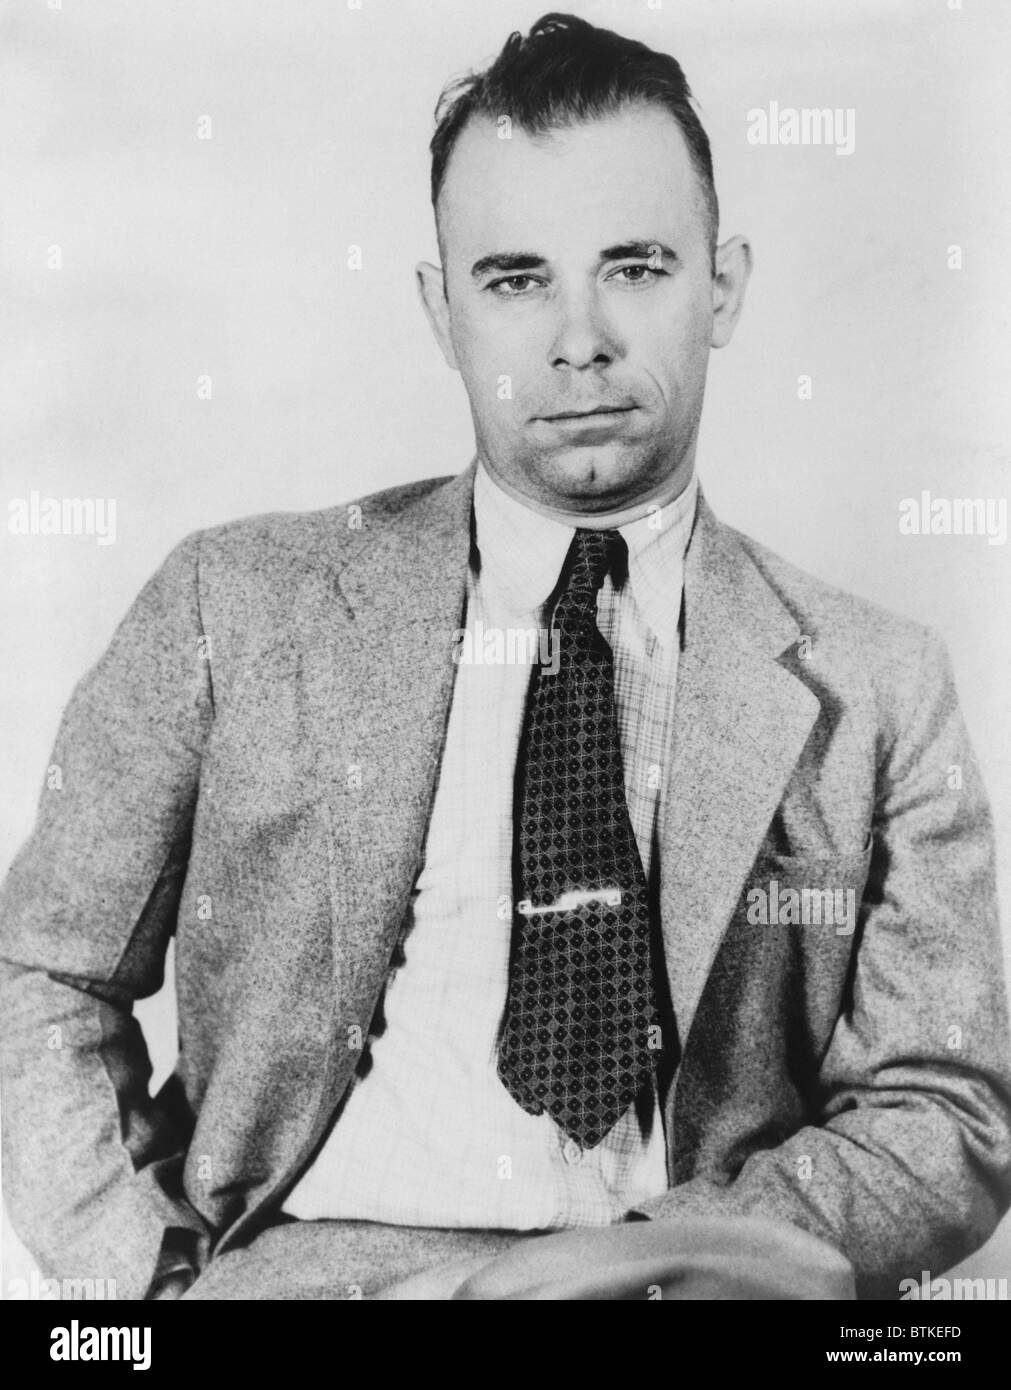 John Dillinger (1903-1934), berühmte Bankräuber in polizeilichem Gewahrsam im September 1933, würde bald durch fünf ehemalige Gefangene befreit werden Stockfoto